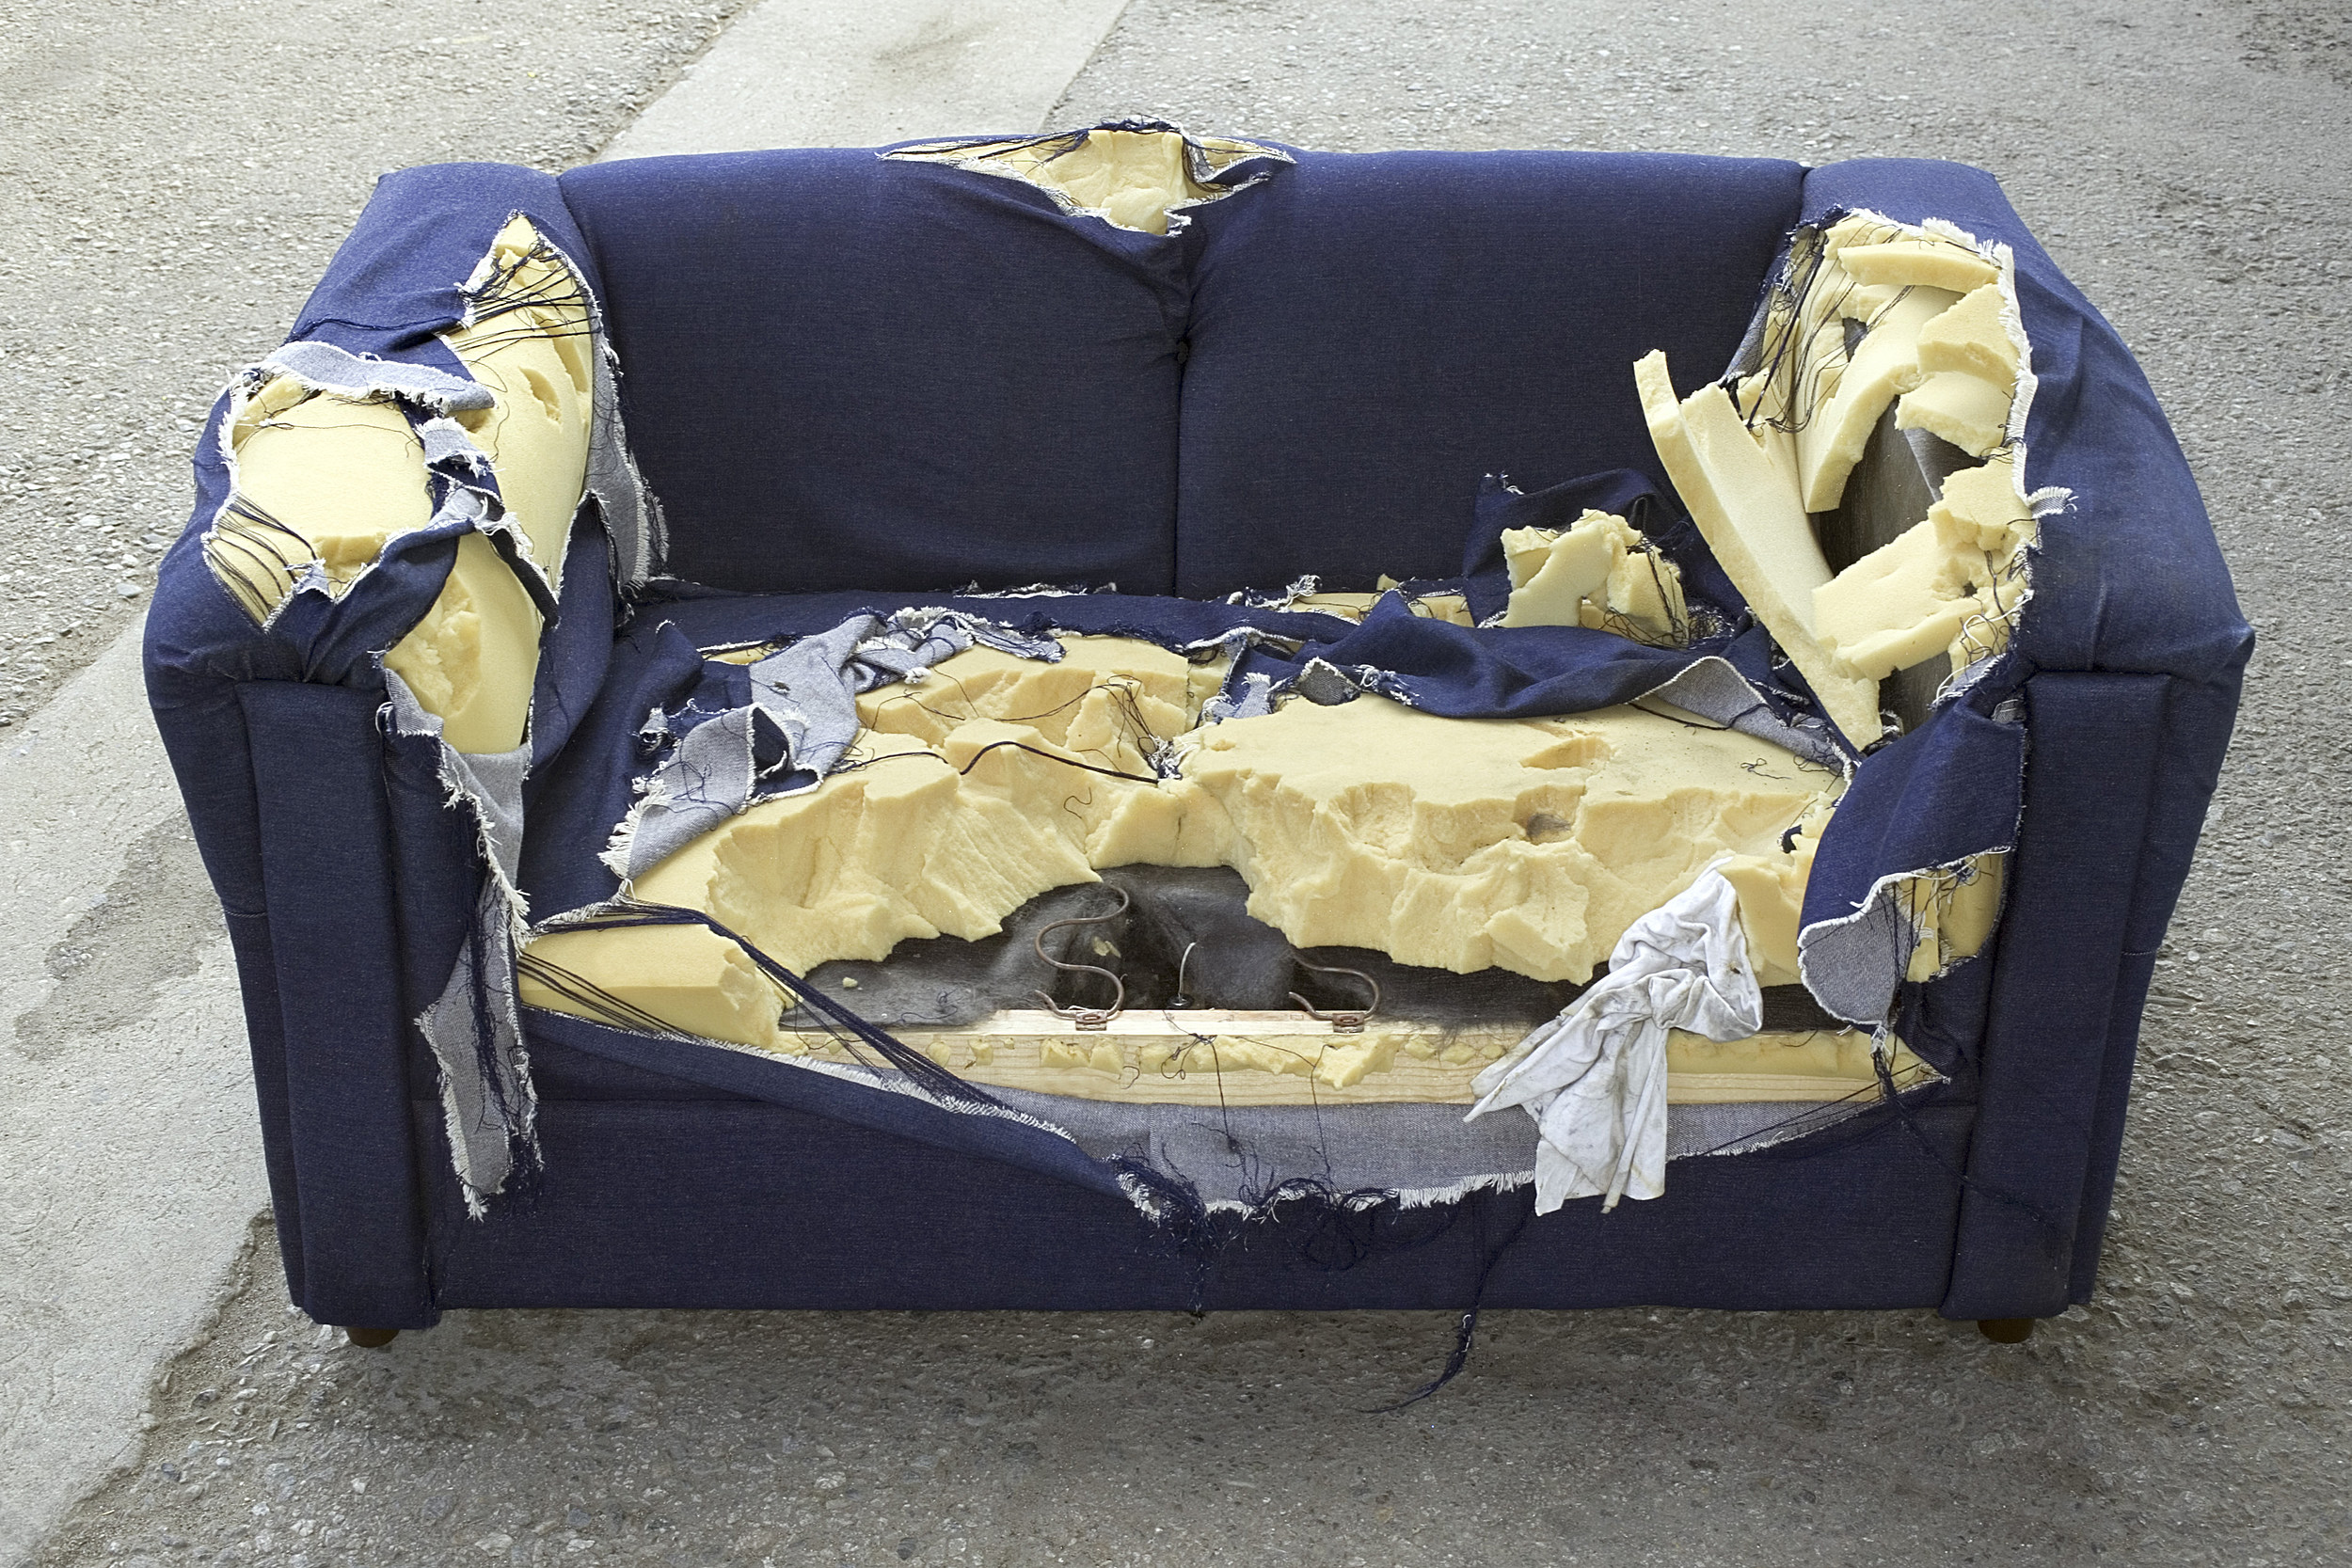 Диван на мусорке. Порванный диван. Сломанный диван. Убитый диван. Старый сломанный диван.